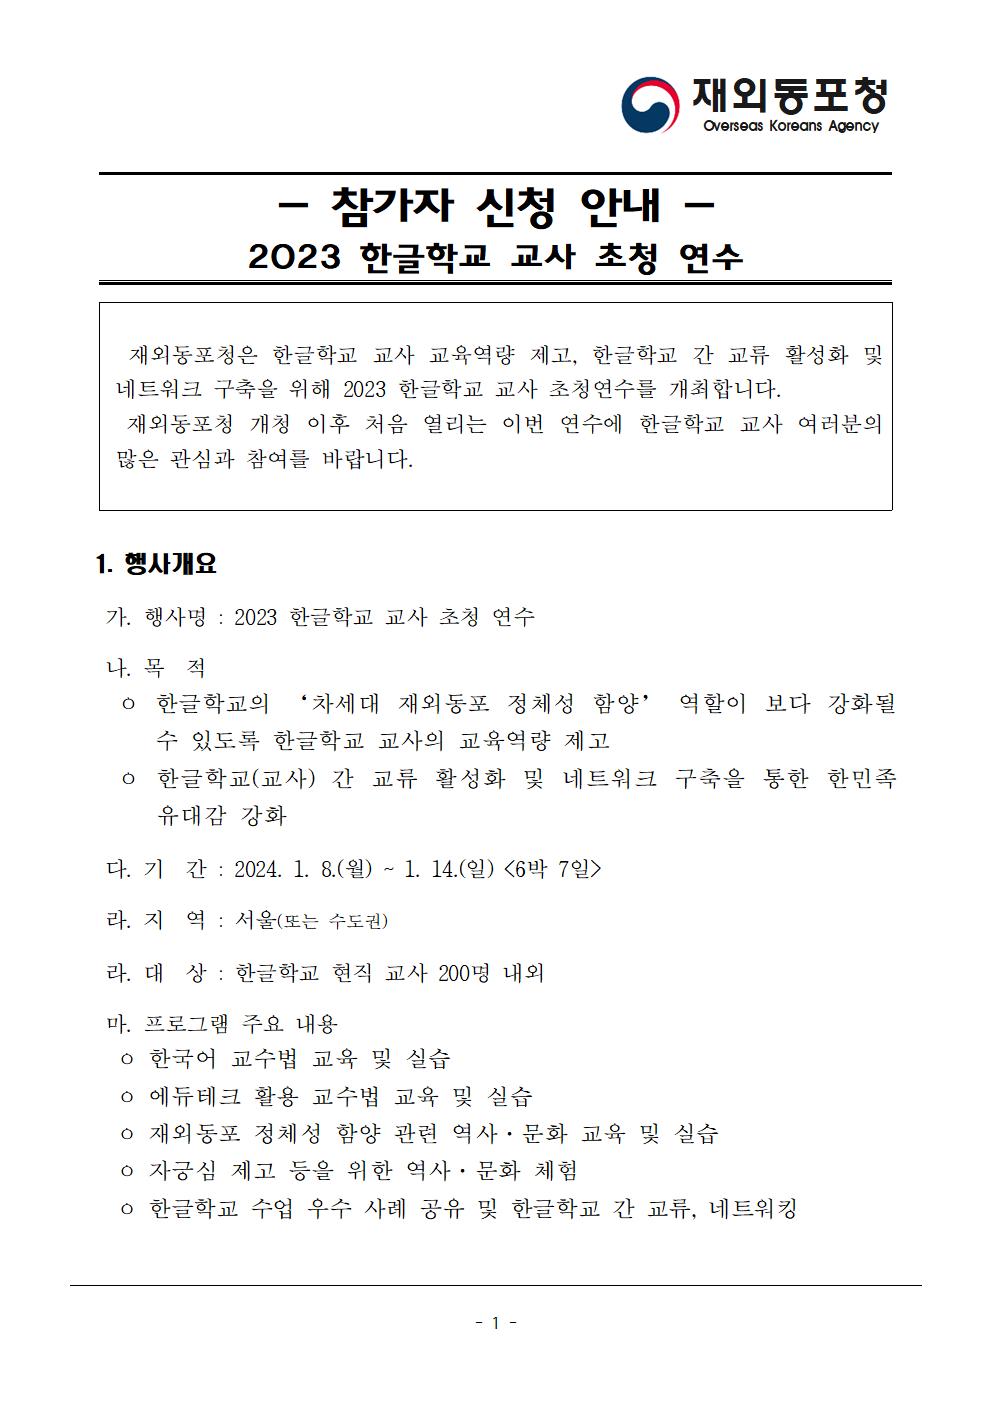 [붙임] 3. 2023 한글학교 교사 초청 연수 참가자 신청 안내001.jpg